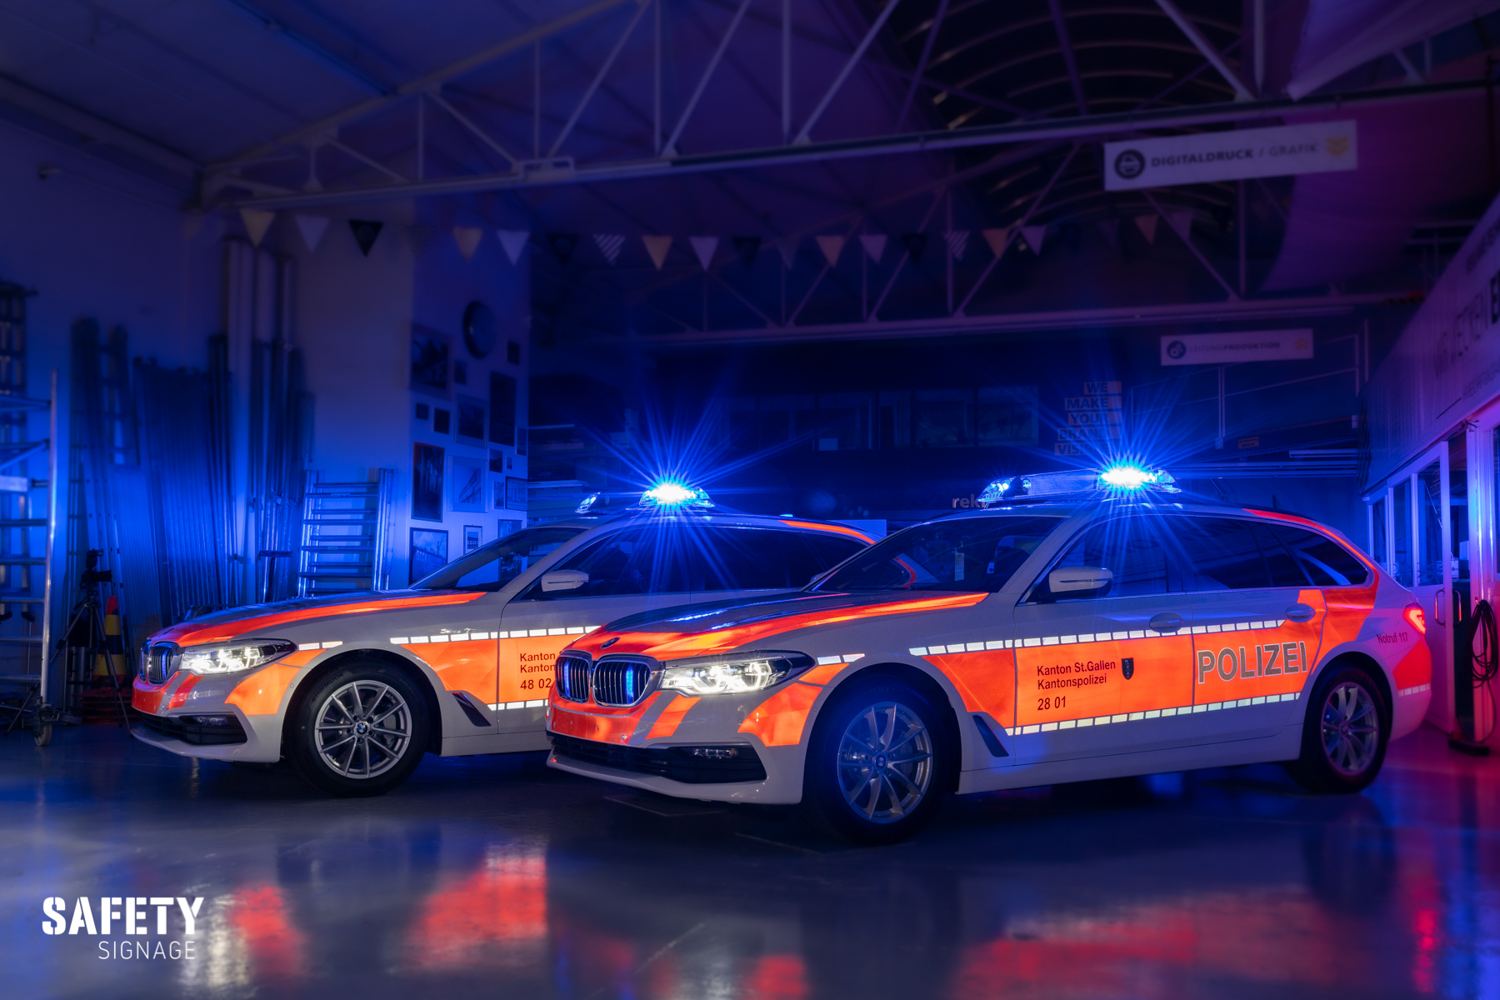 Polizei Patroullienfahrzeug BMW Kantonspolizei St.Gallen Highly Reflective